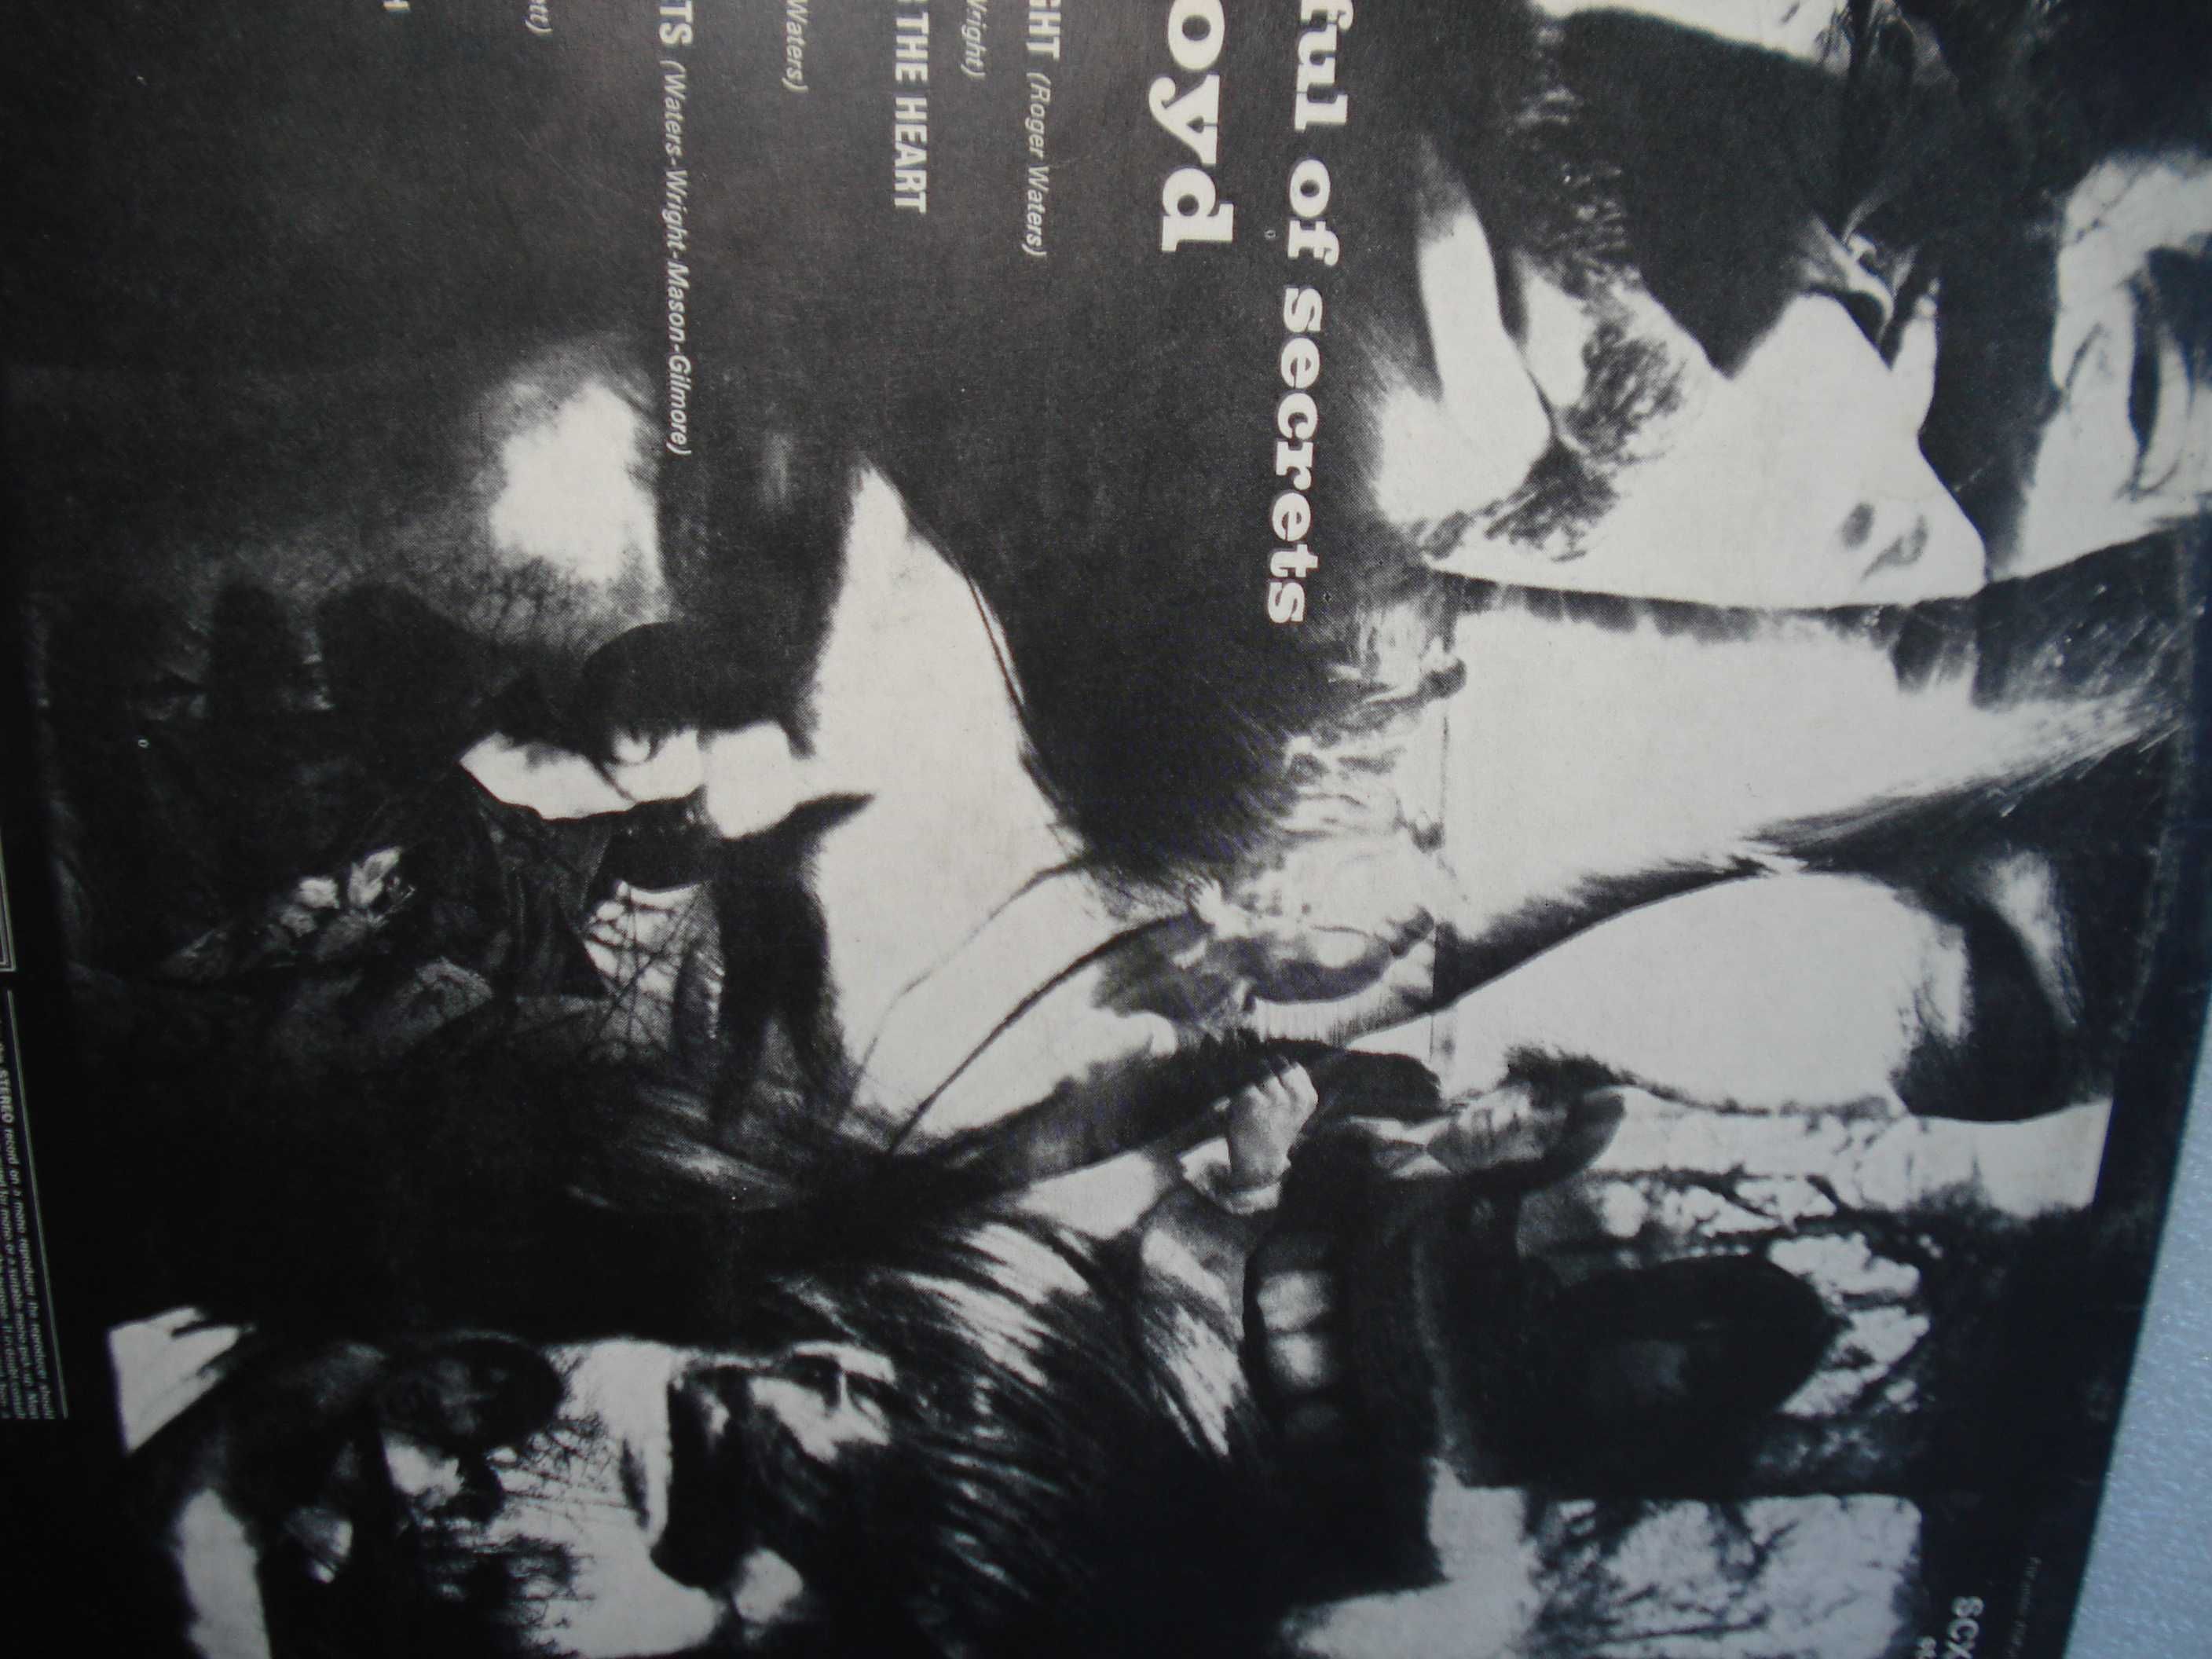 Antigo Álbum vinil dos Pink Floyd de 1973 "A Saucerful Of Secrets"